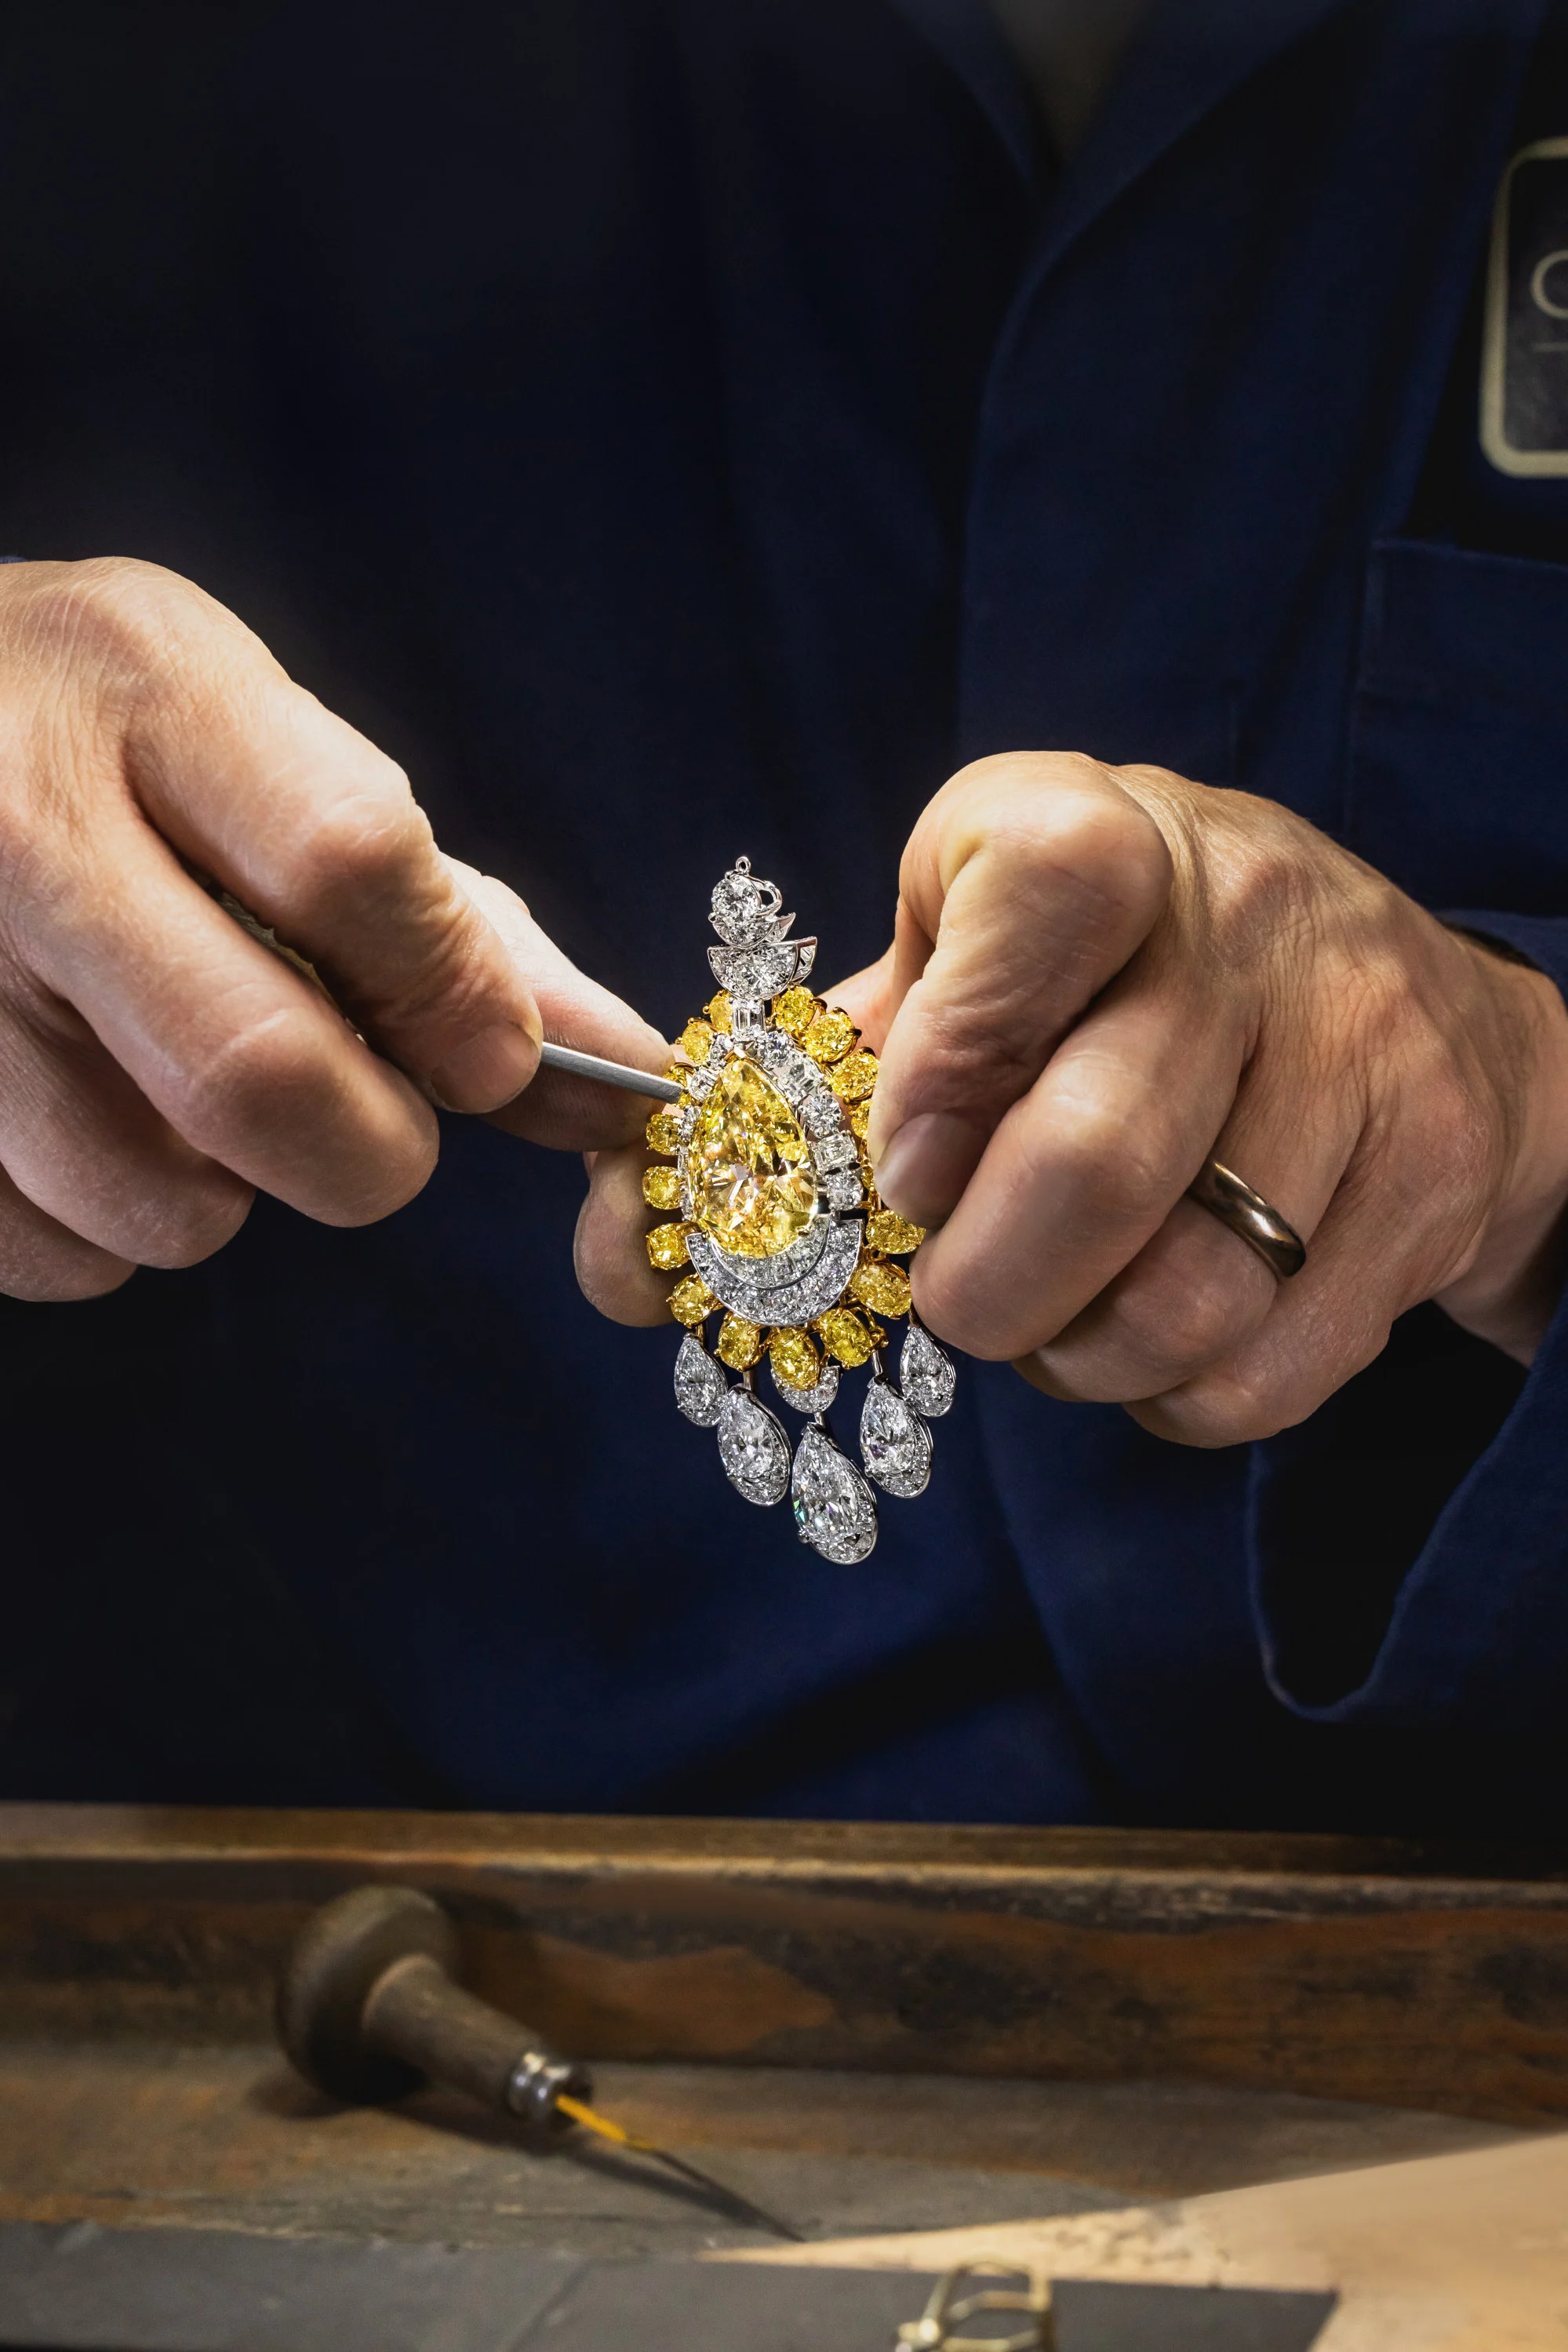 Британские ювелиры Graff особенно известны своими работами с желтыми бриллиантами.  Фото: раздаточный материал